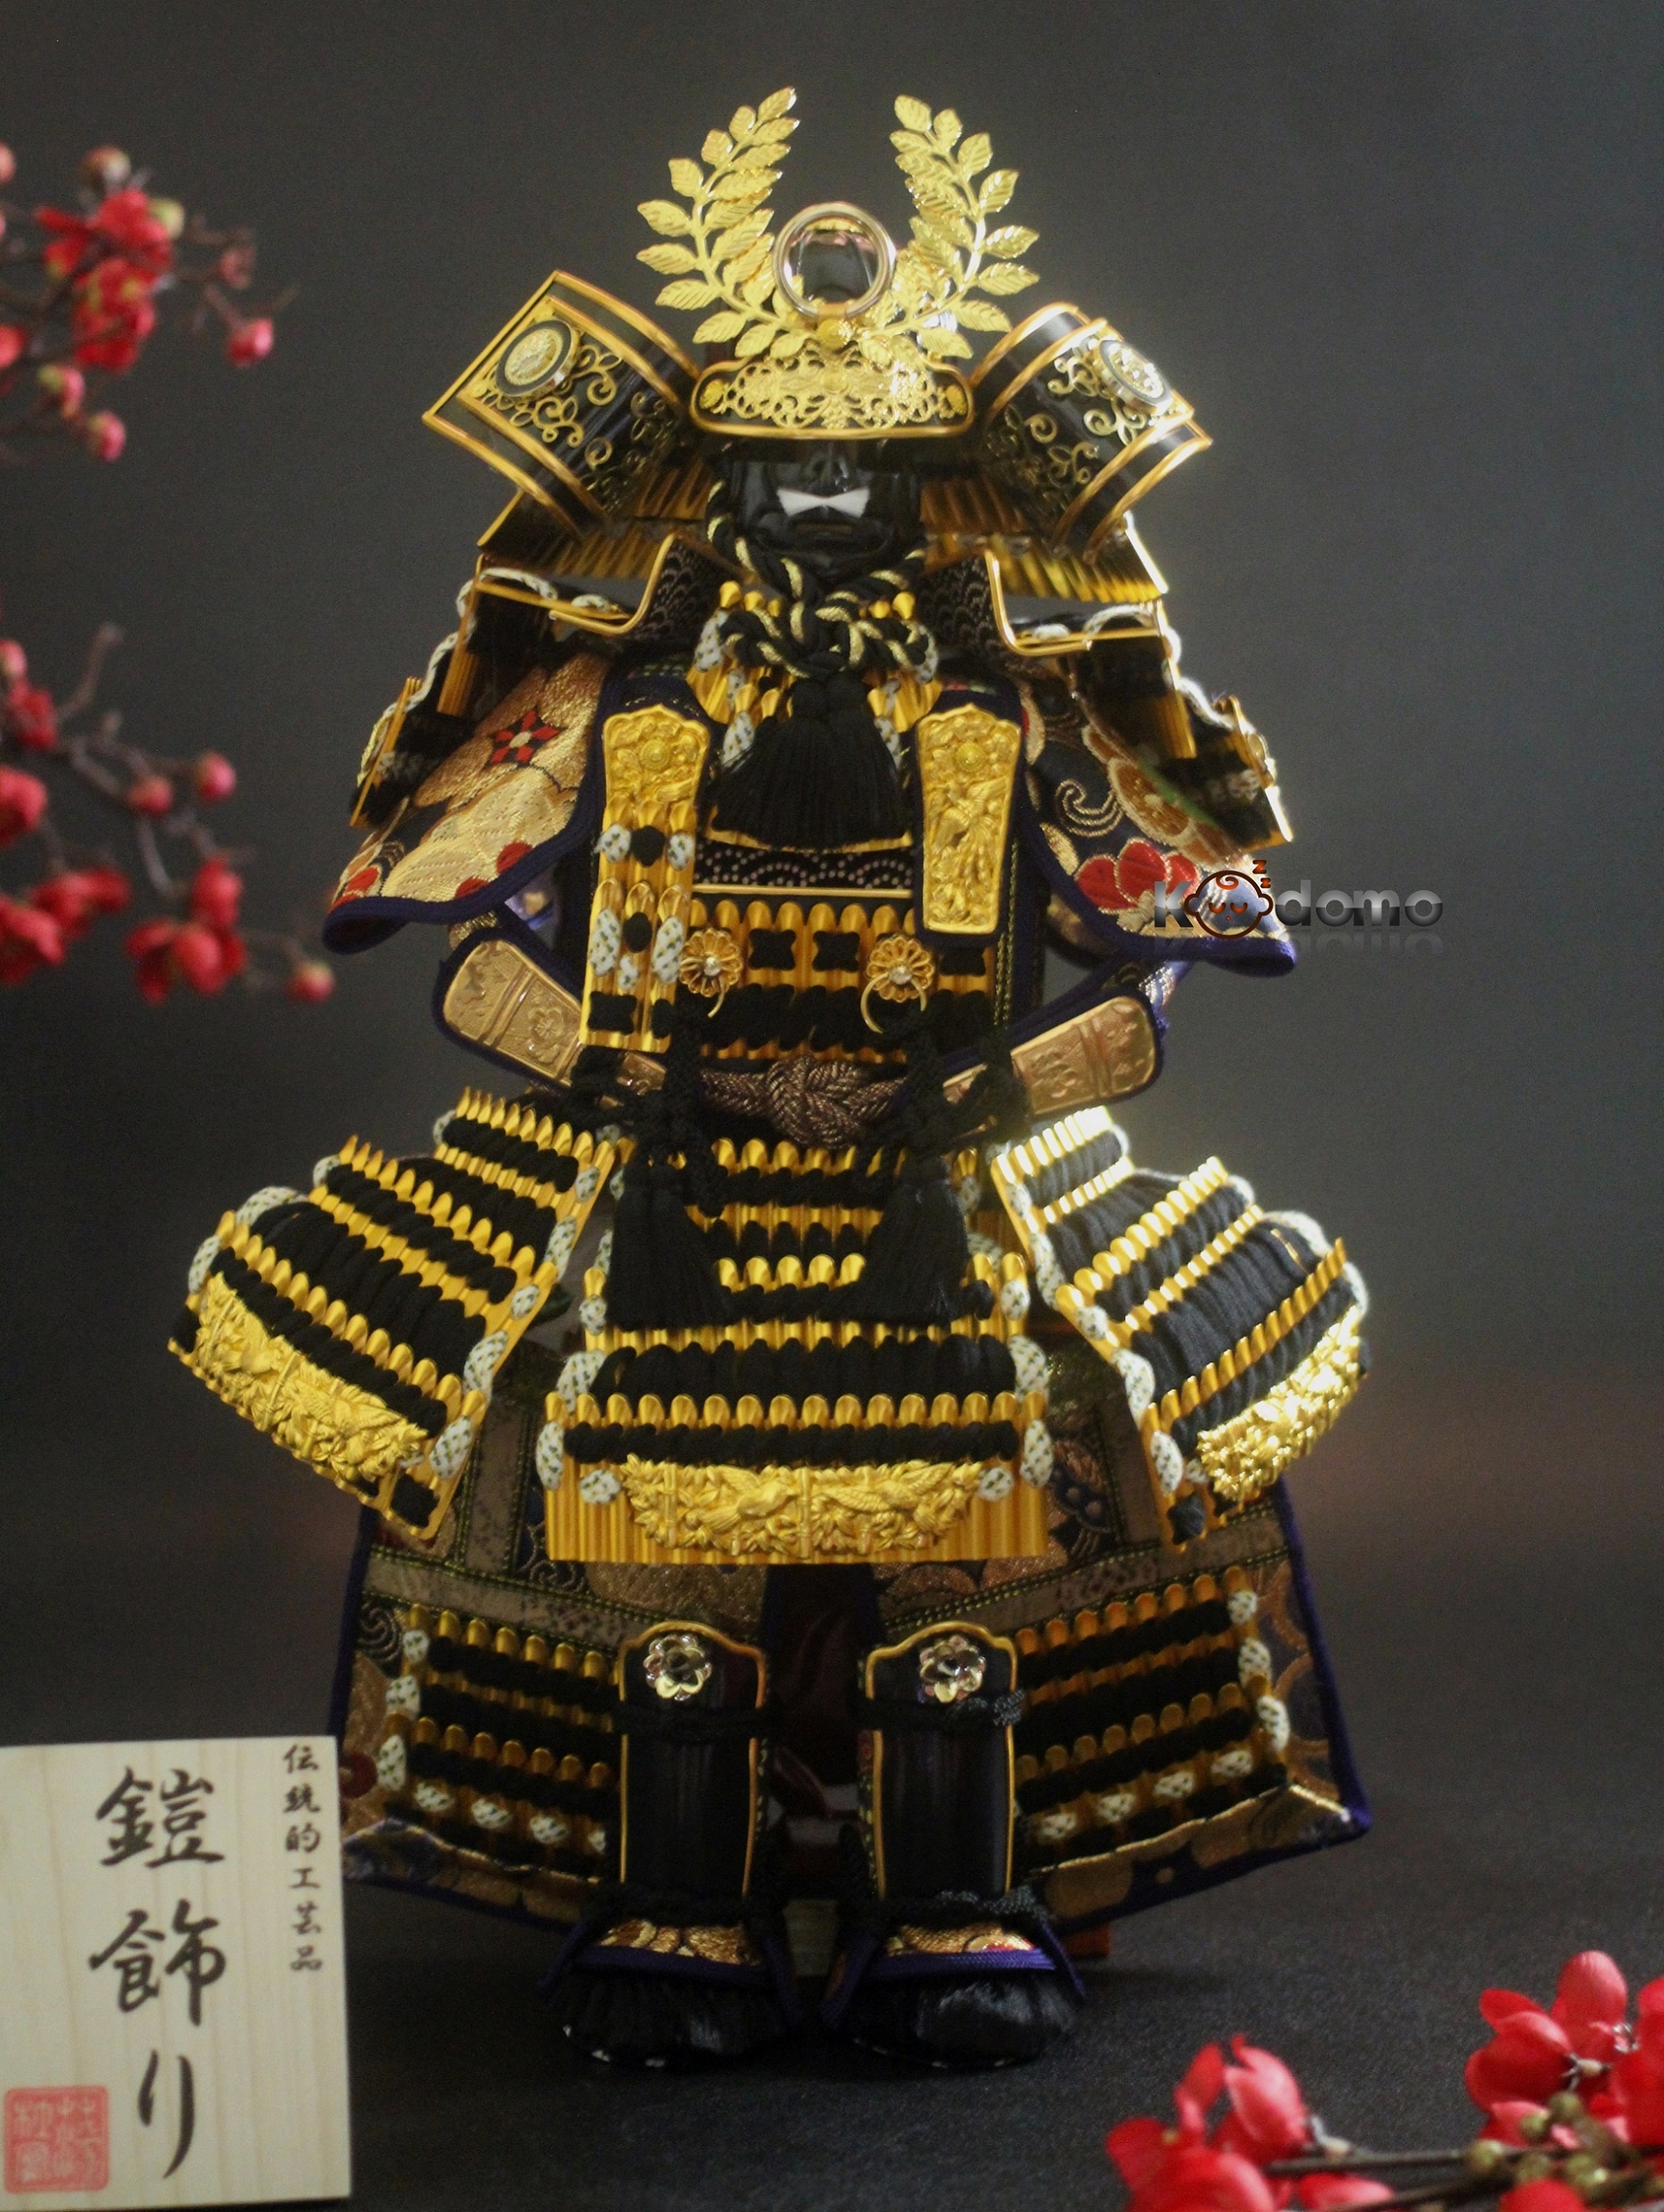 Hình nền  mặt nạ Samurai Con quỷ ChunLo hình minh họa oni mask  2560x1600  batgirl21  1223578  Hình nền đẹp hd  WallHere